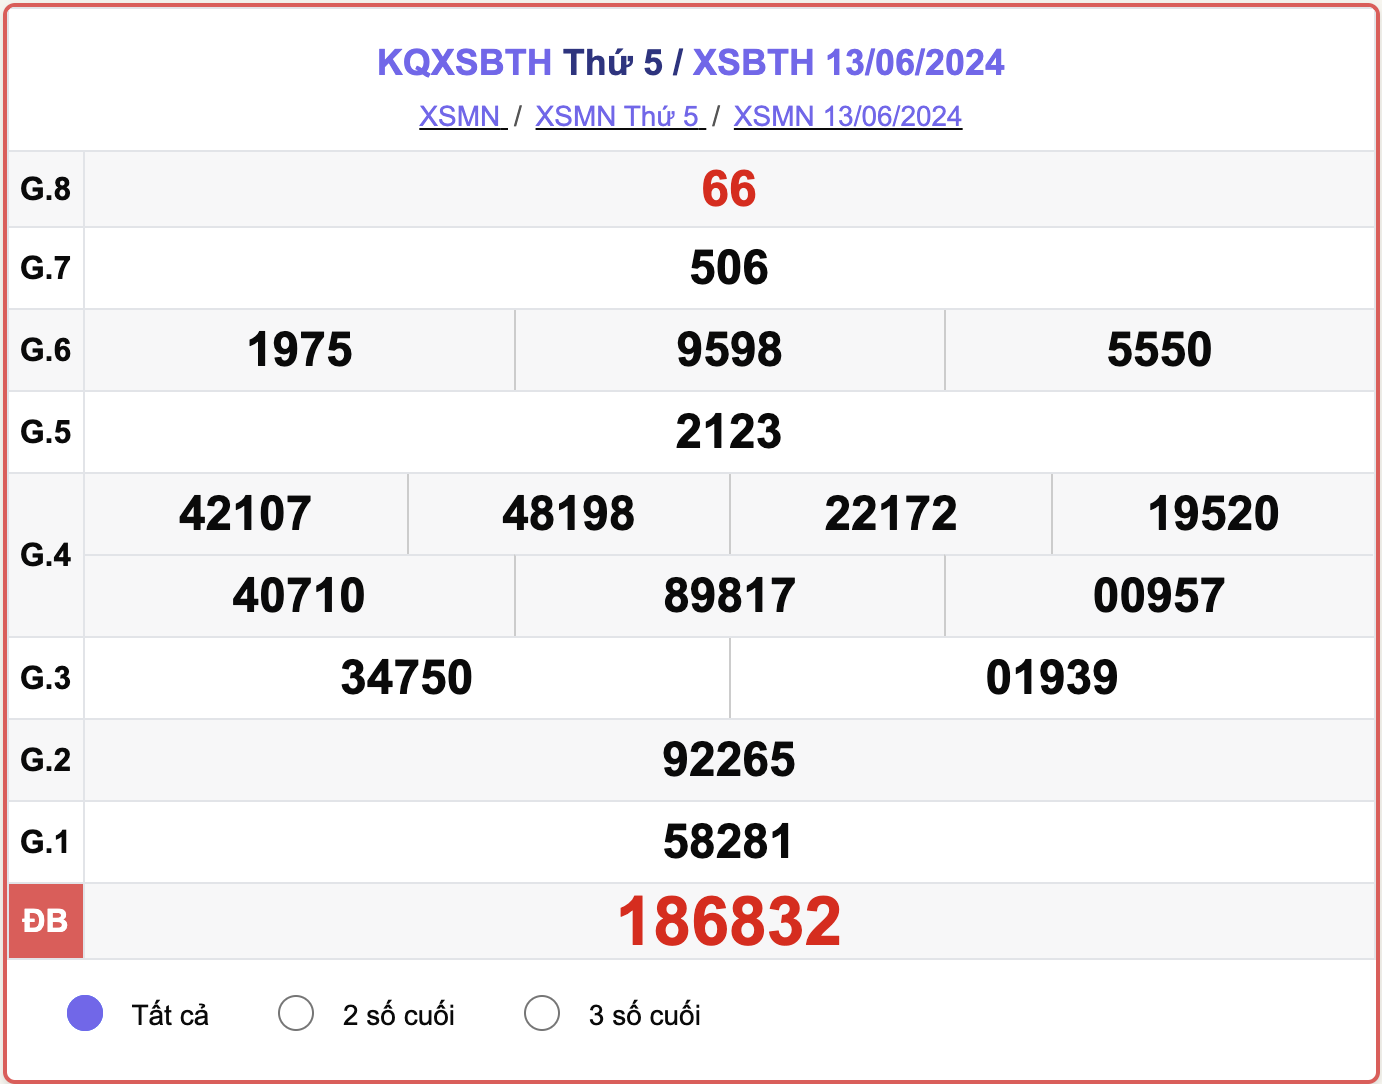 XSBTH 13/6, kết quả xổ số Bình Thuận hôm nay 13/6/2024.